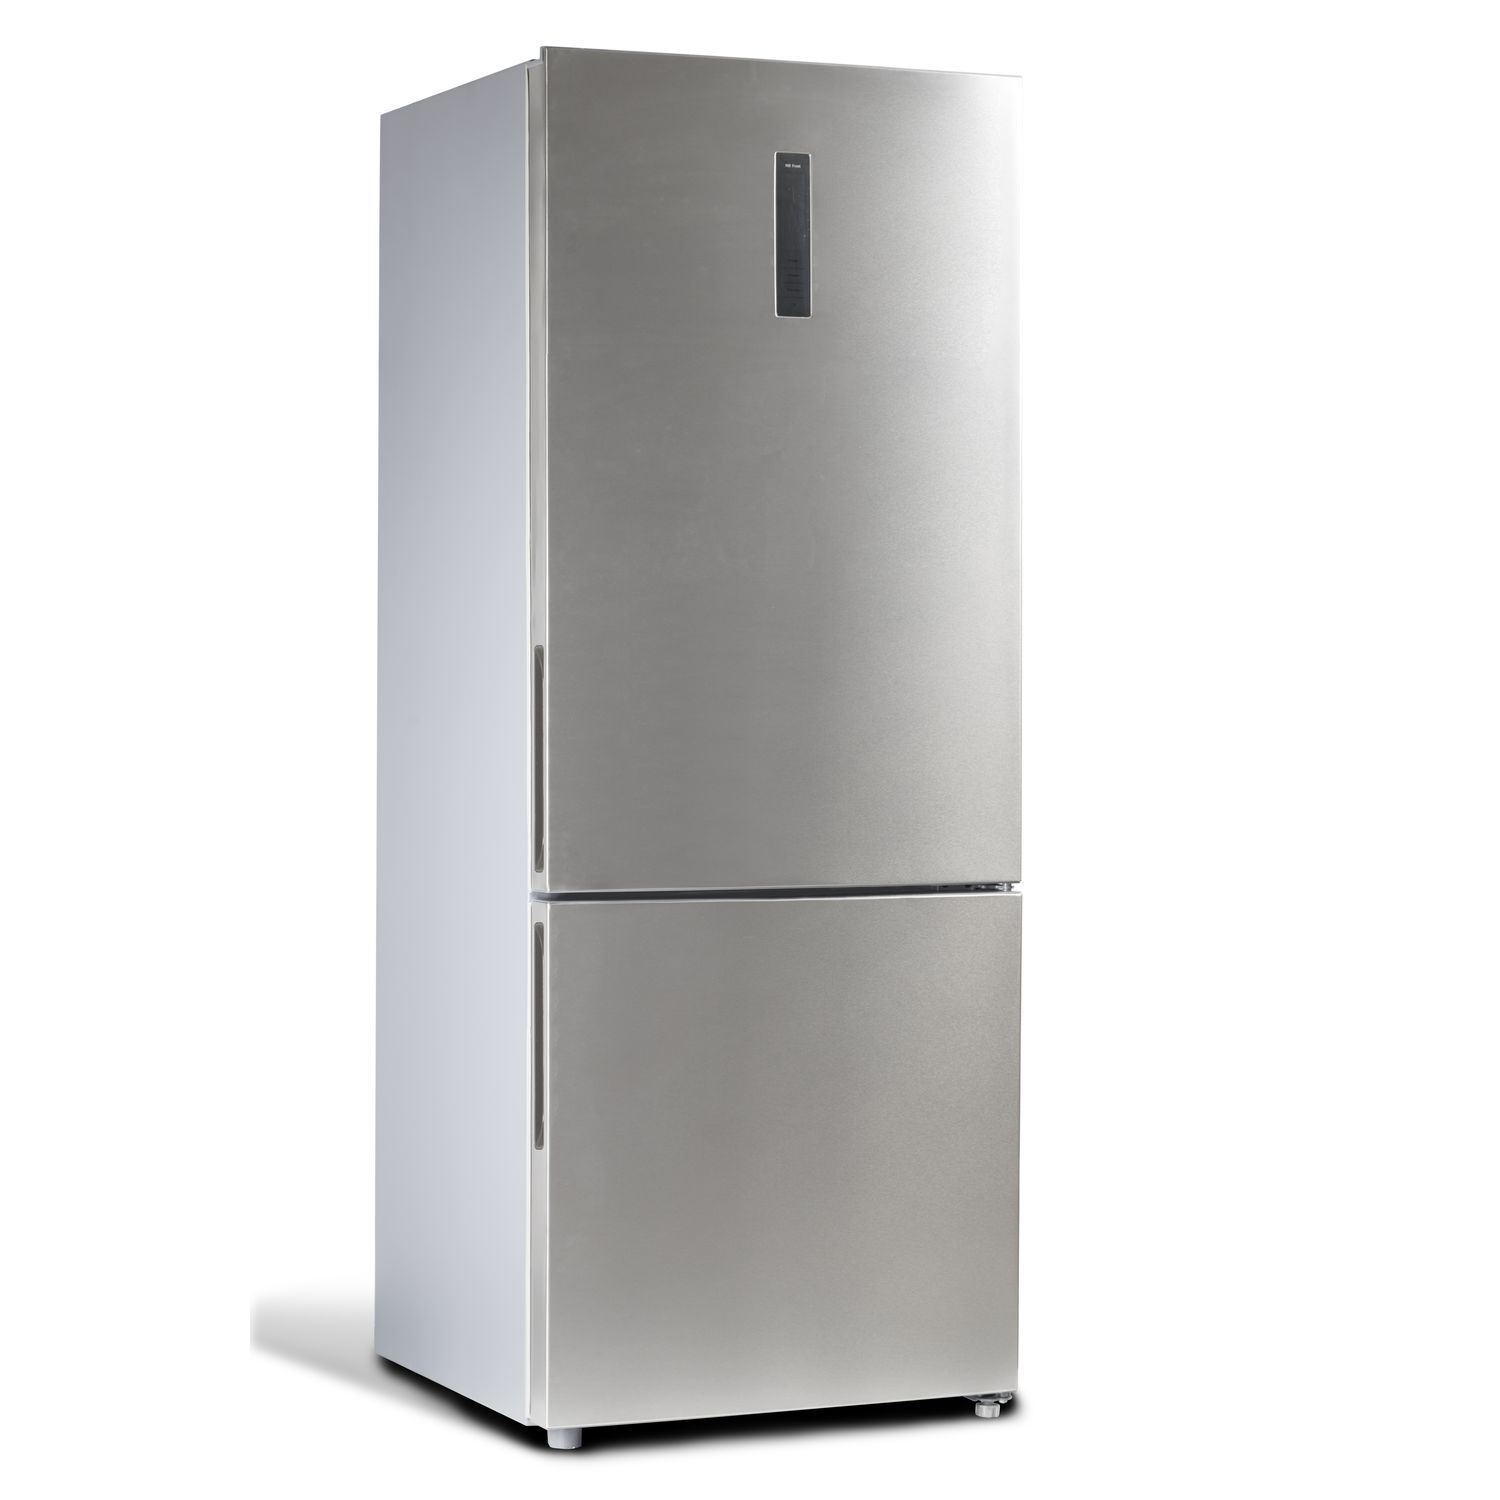 QILIVE Réfrigérateur américain Q.6517, 535 L, Froid ventilé No